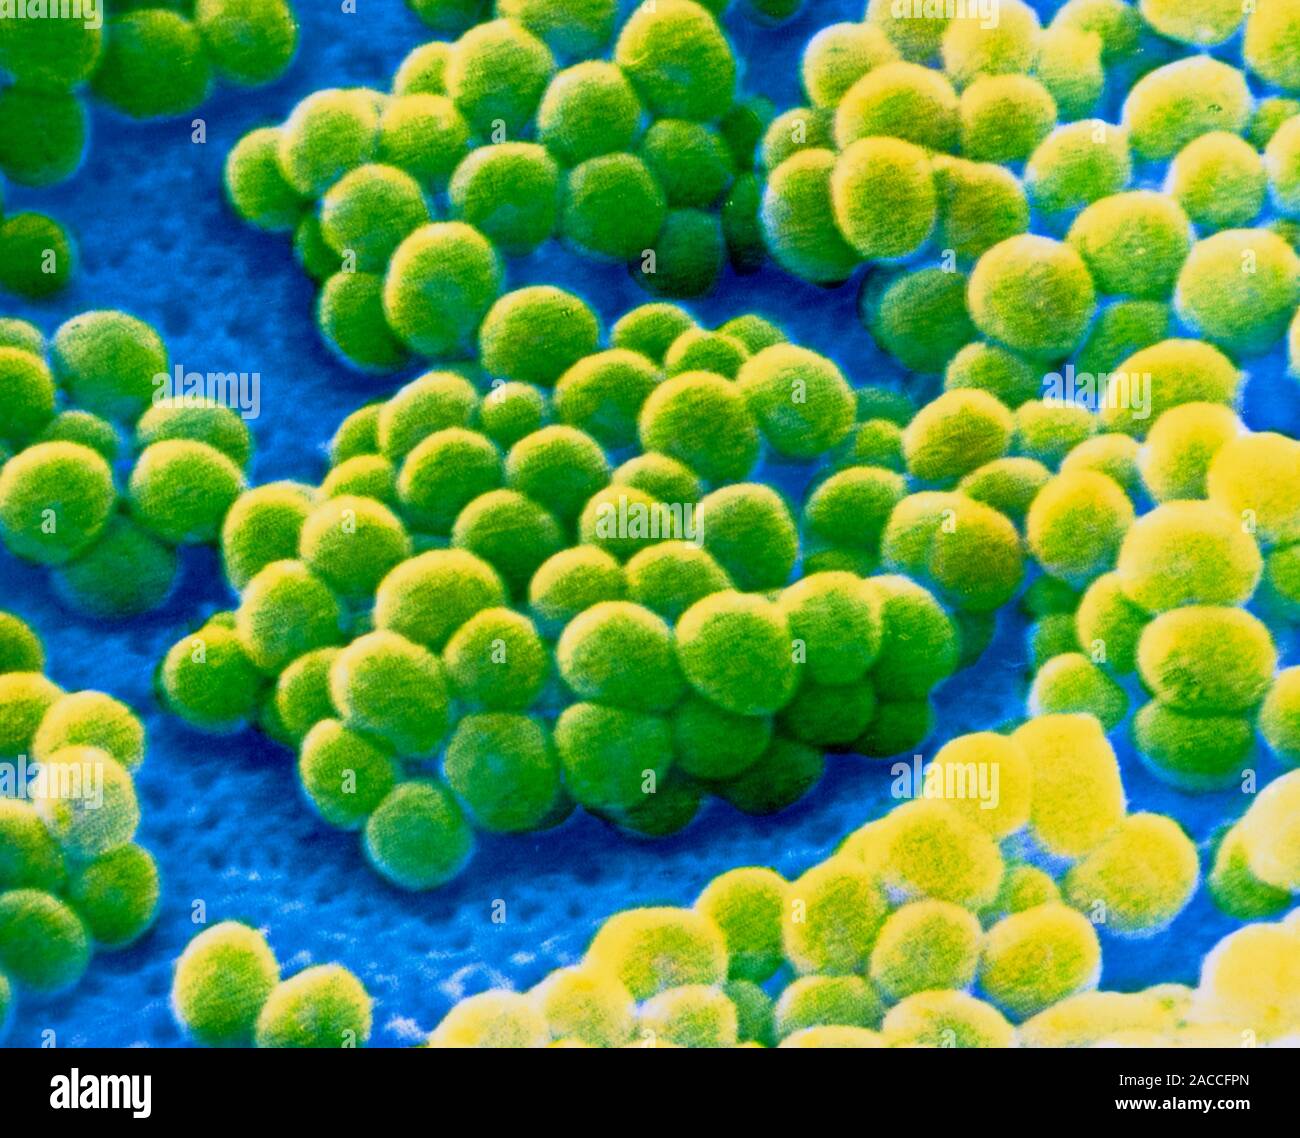 Staphylococcus aureus 4. S. aureus золотистый стафилококк. Giant Microbes стафилококк золотистый. Золотистый стафилококк воспаление. Стафилококки бактерии под микроскопом.